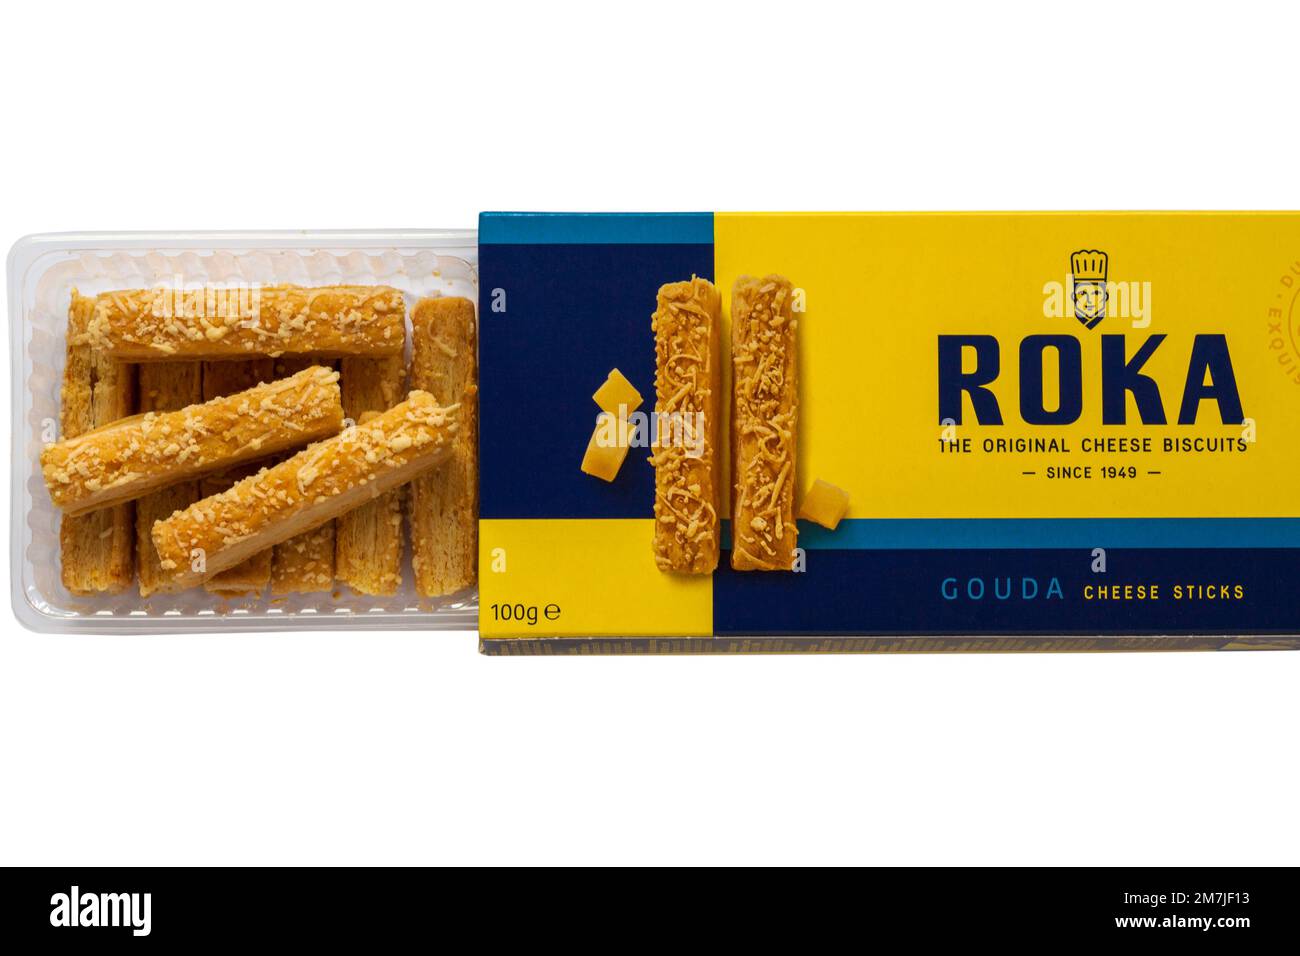 Scatola di formaggio Roka Gouda bastoncini i biscotti originali al formaggio aperti per mostrare il contenuto su sfondo bianco Foto Stock